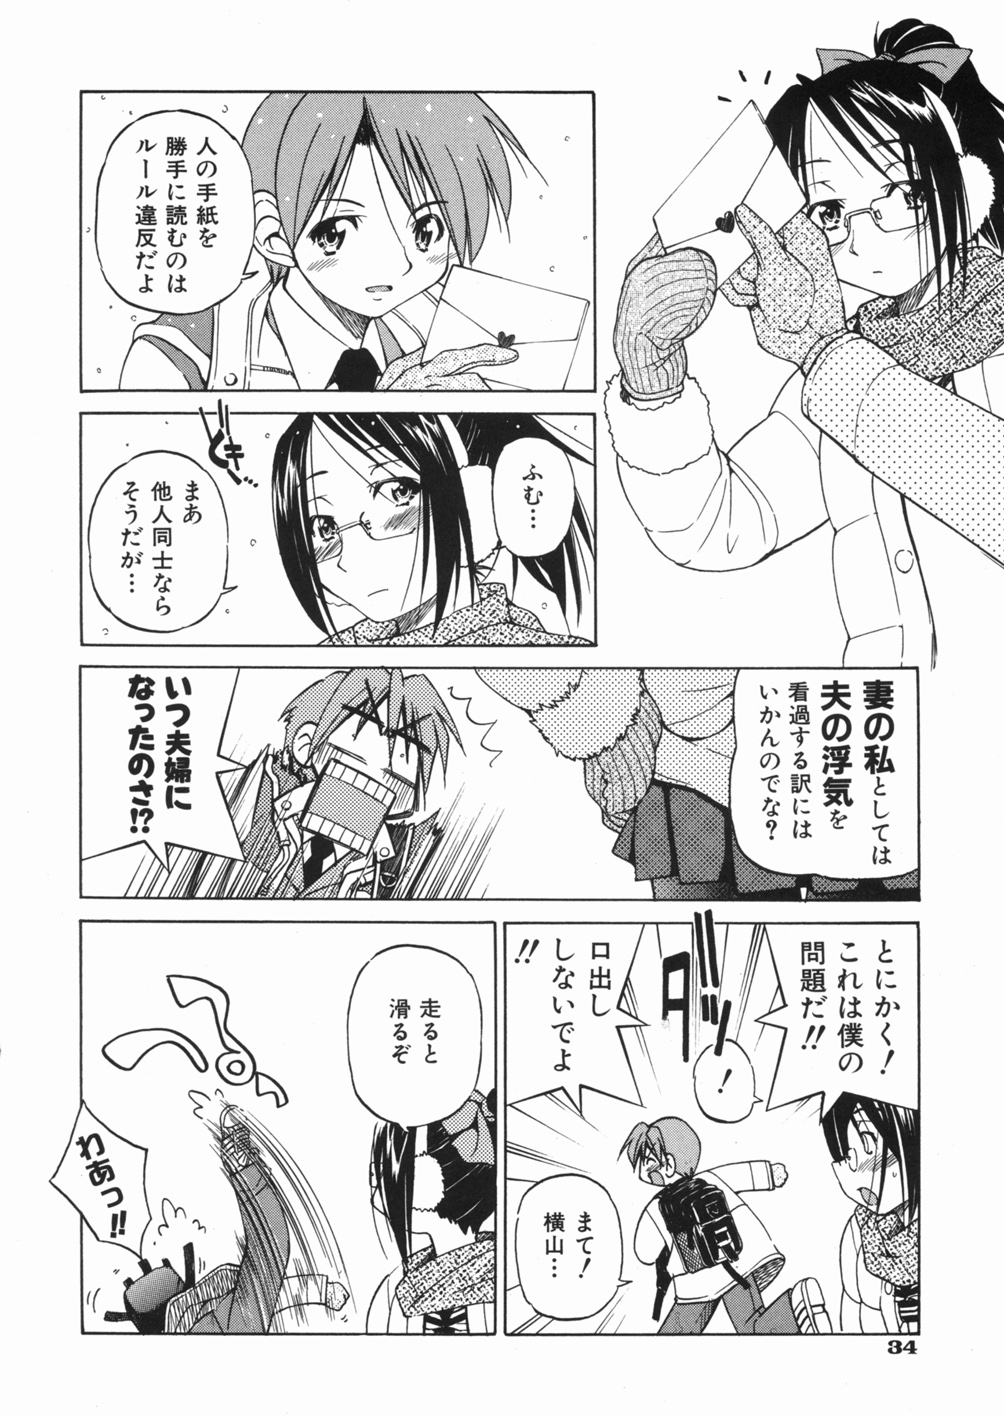 [Inoue Yoshihisa] Sunao page 38 full